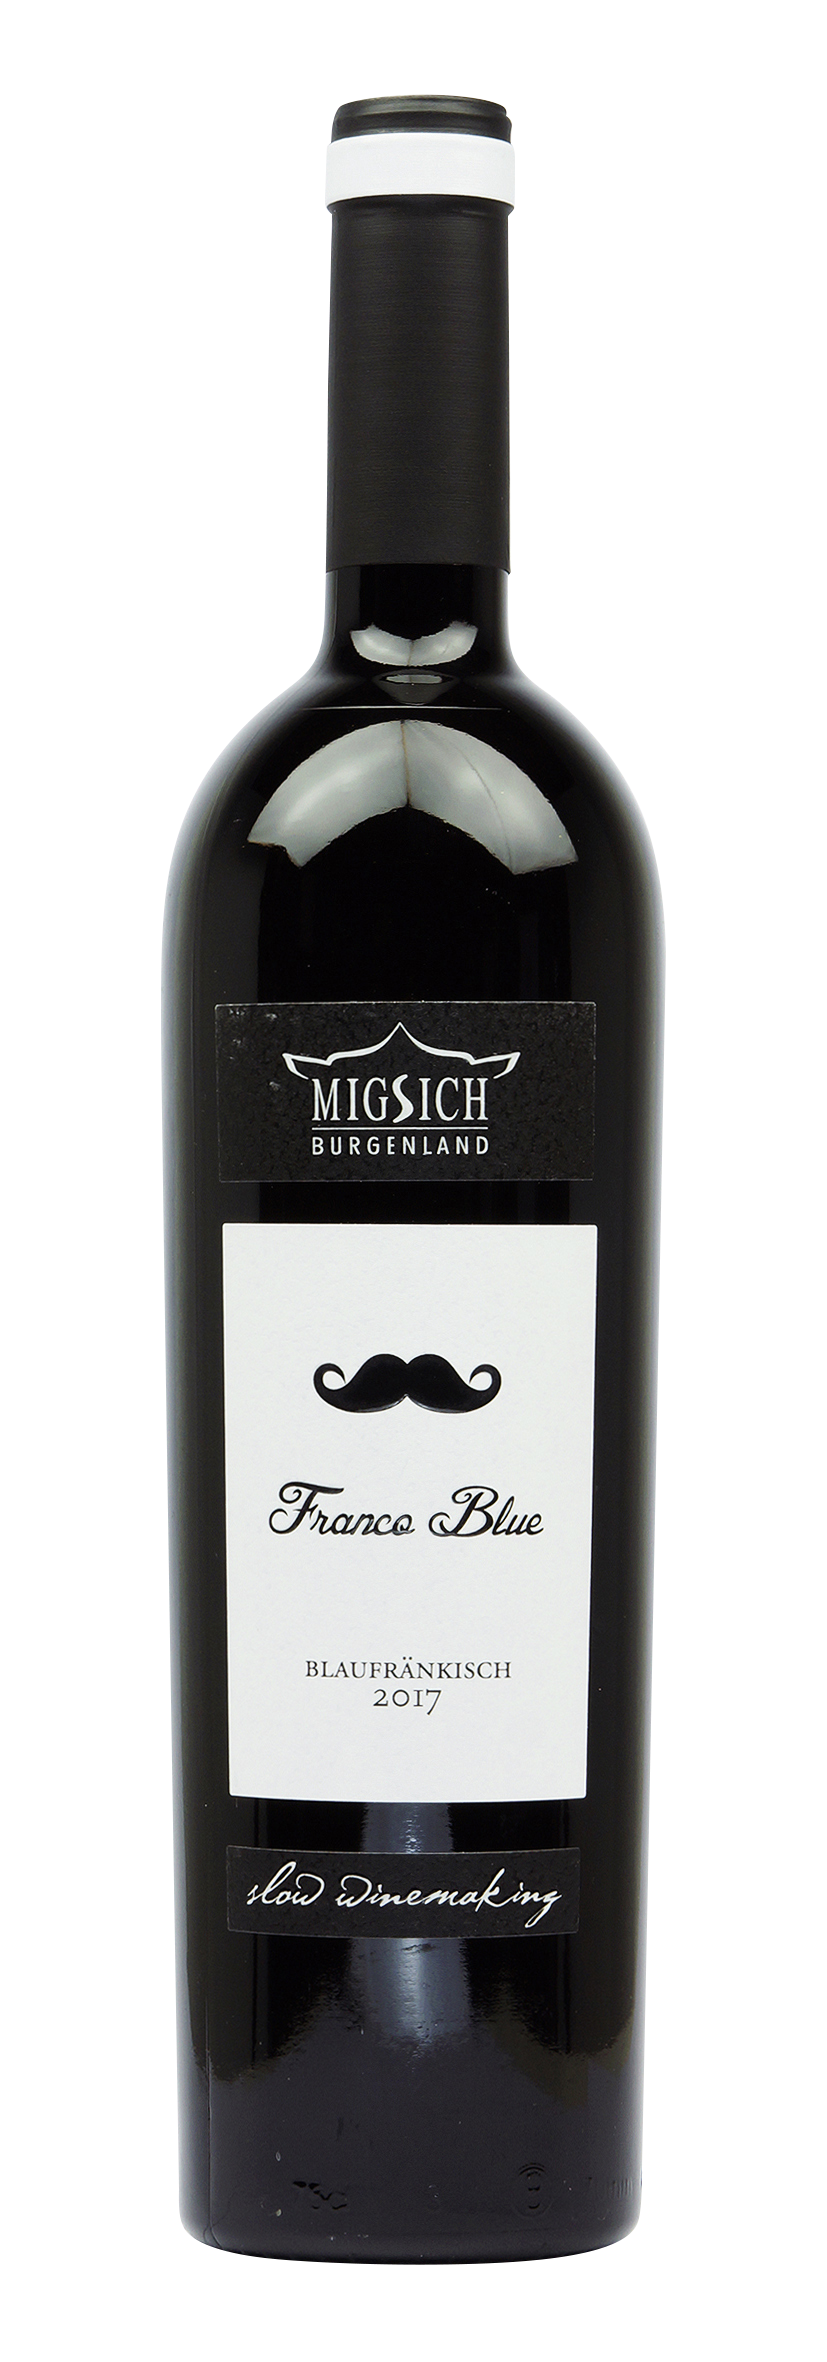 Blaufränkisch Franco Blue 2017